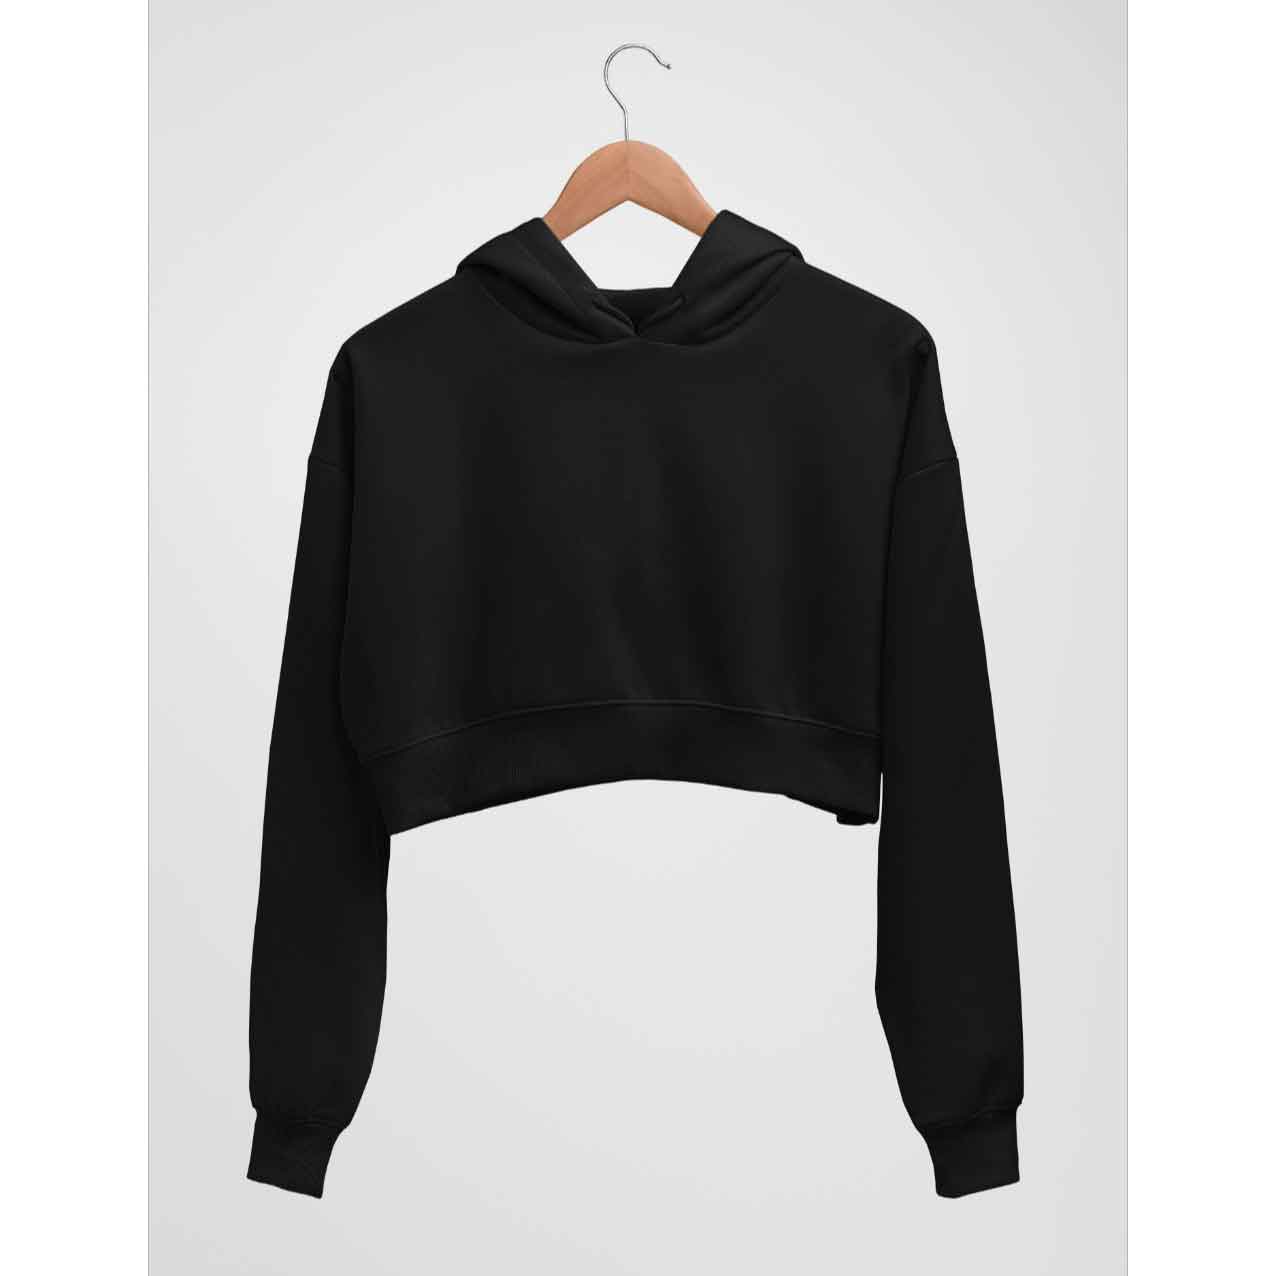 black crop hoodie the banyan tee crop hoodie for teenage girls crop hoodie h&m cropped hoodie